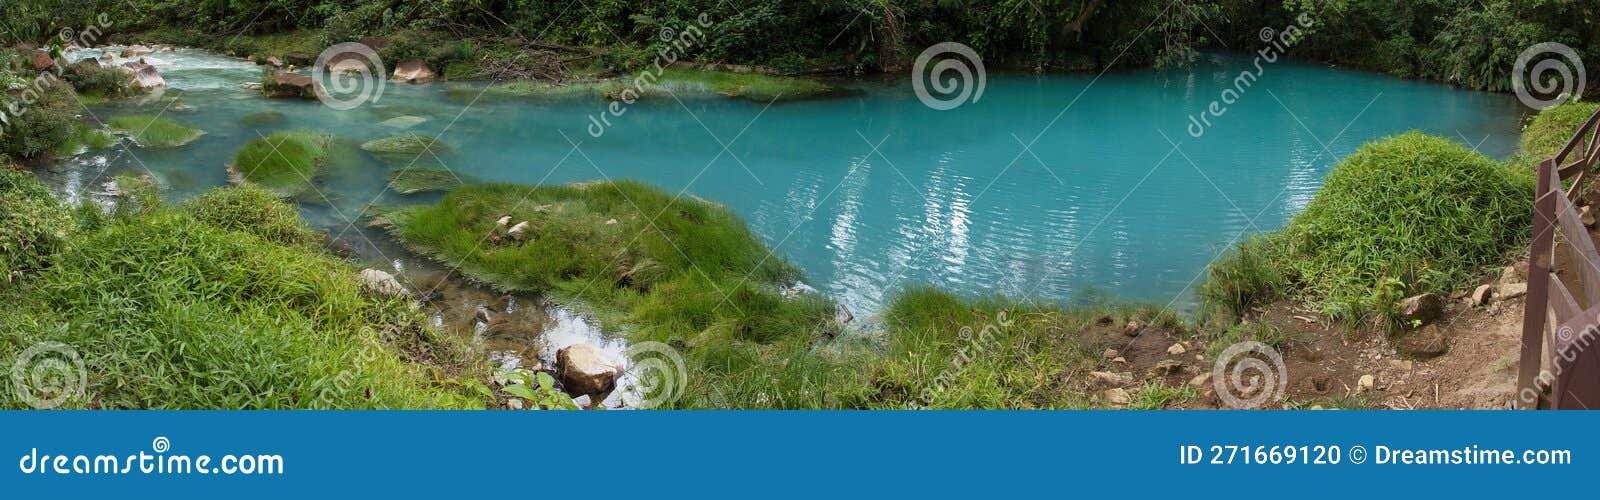 laguna azul on rio celeste in parque nacional volcan tenorio in costa rica